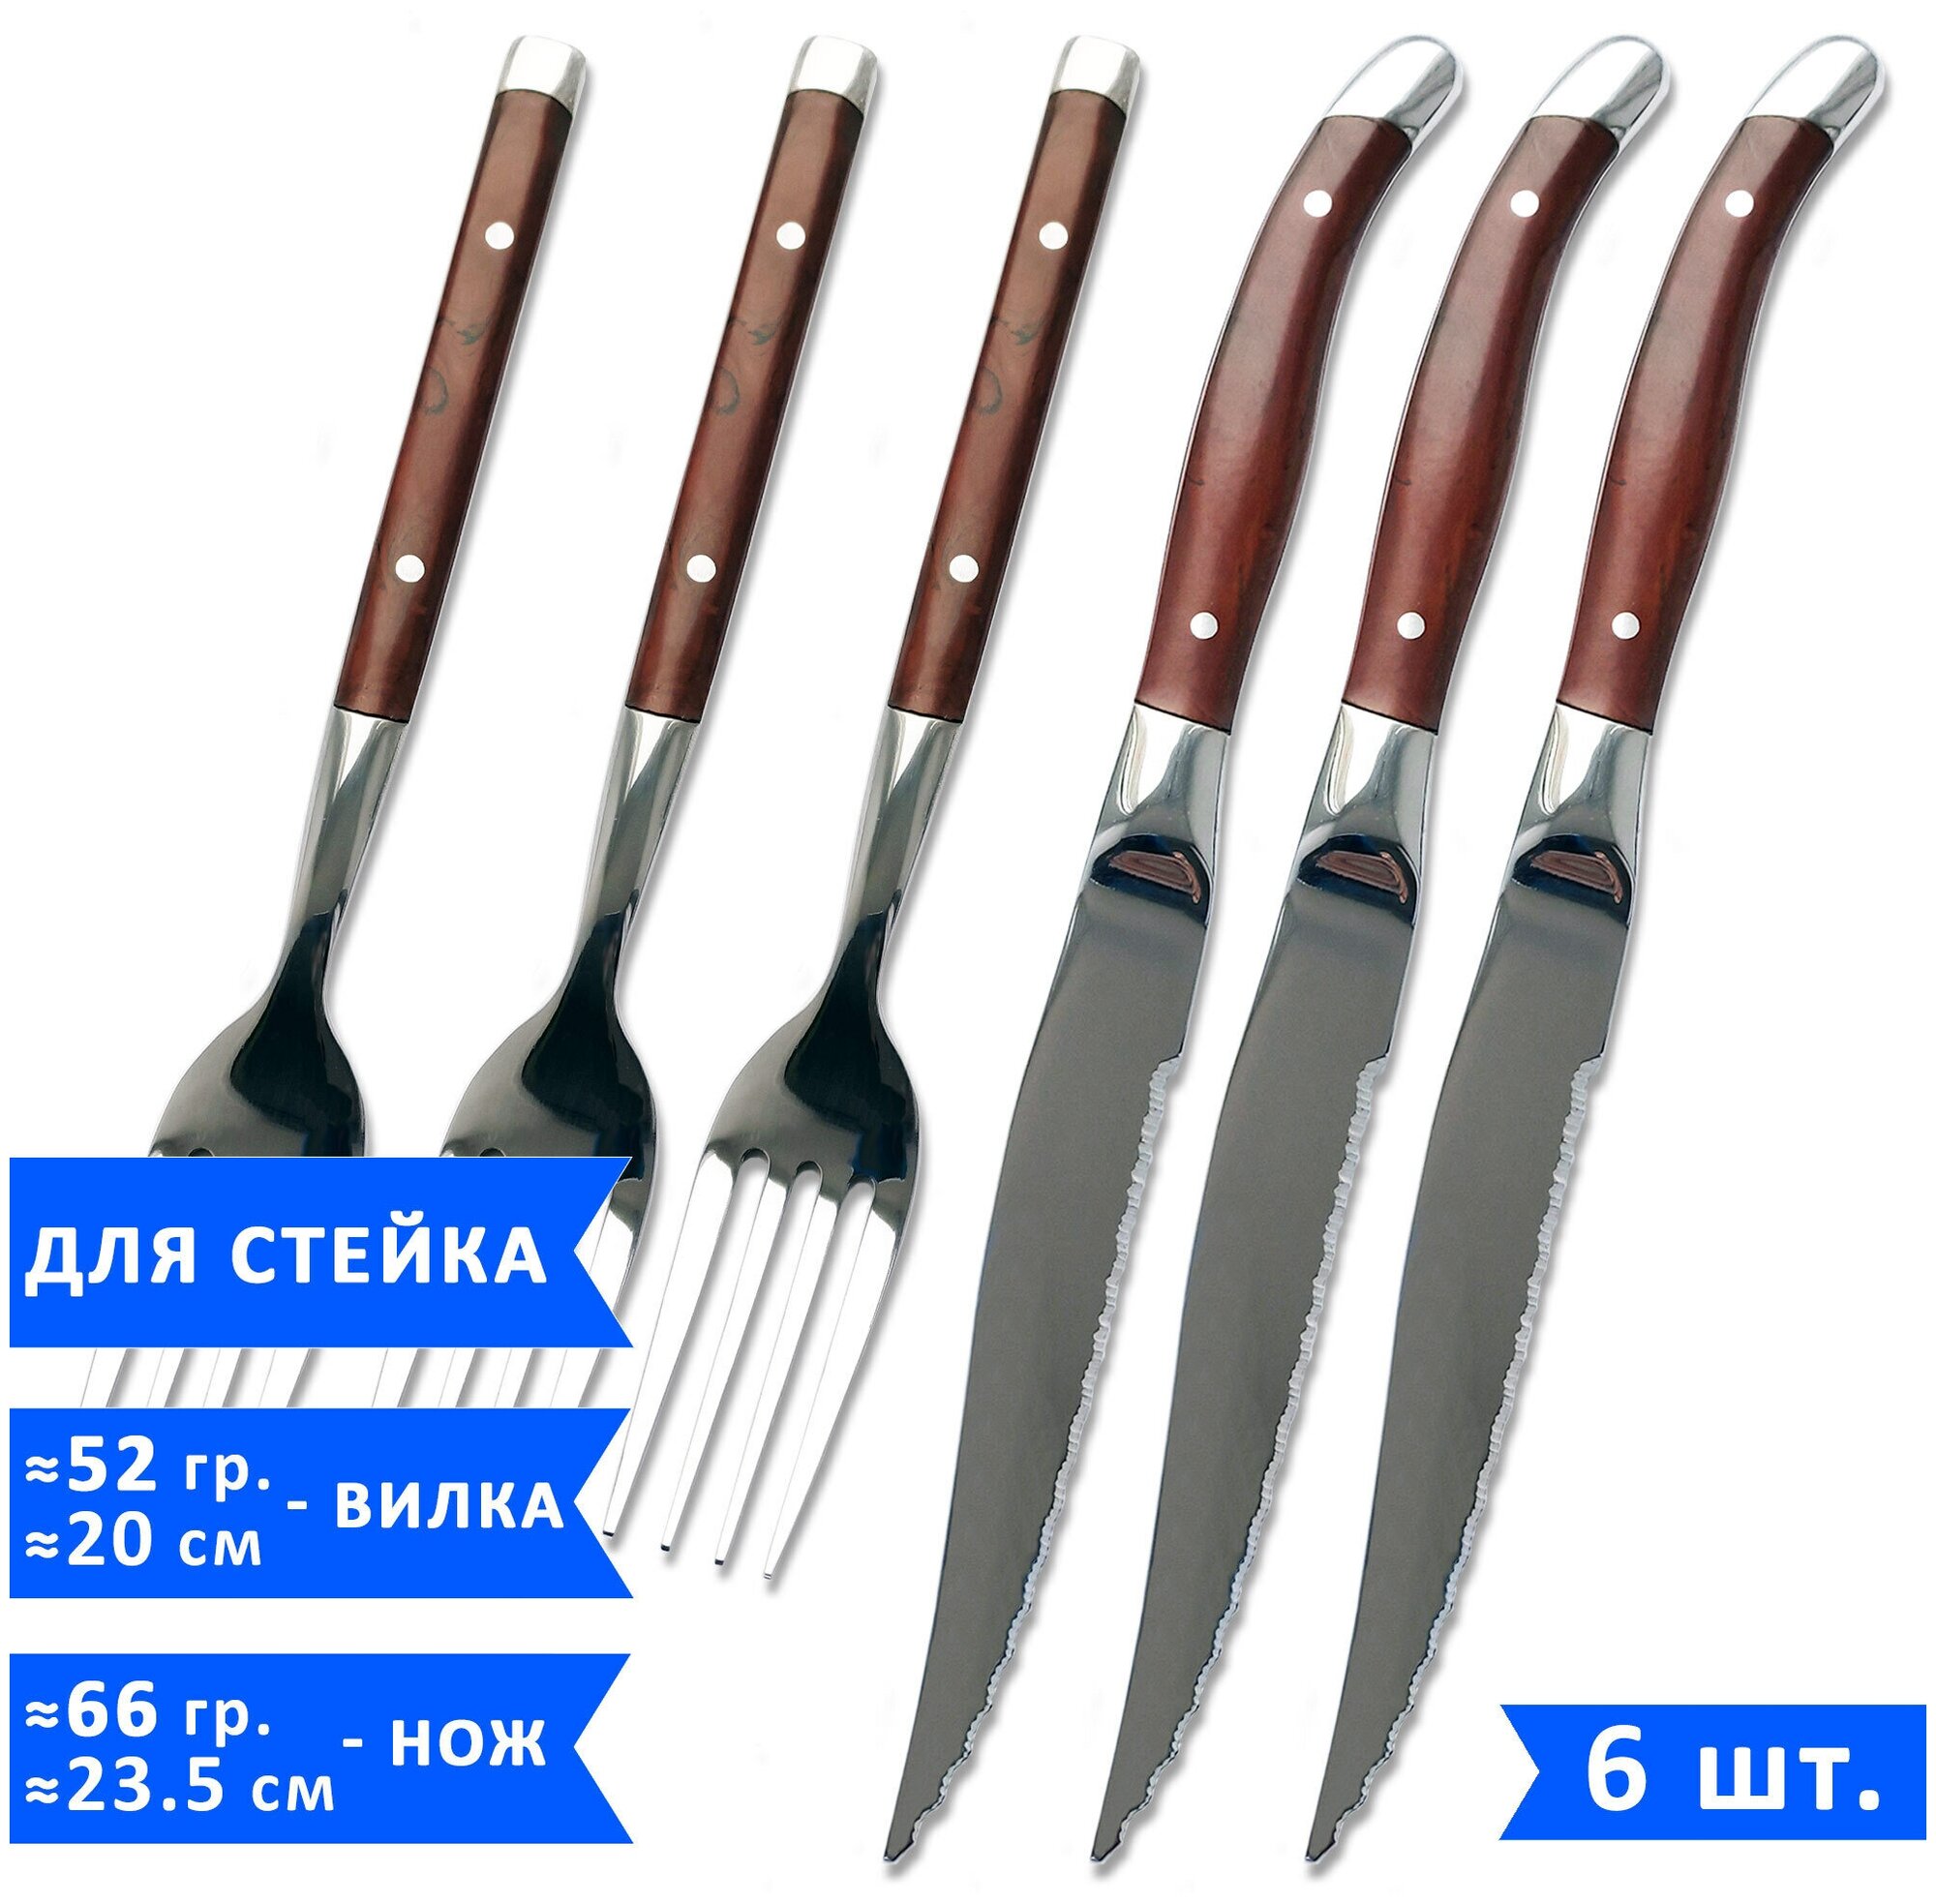 Набор столовых приборов для стейка VELERCART (3 ножа для стейка 23,5 см и 3 вилки 20 см), нержавеющая сталь, 6 предметов